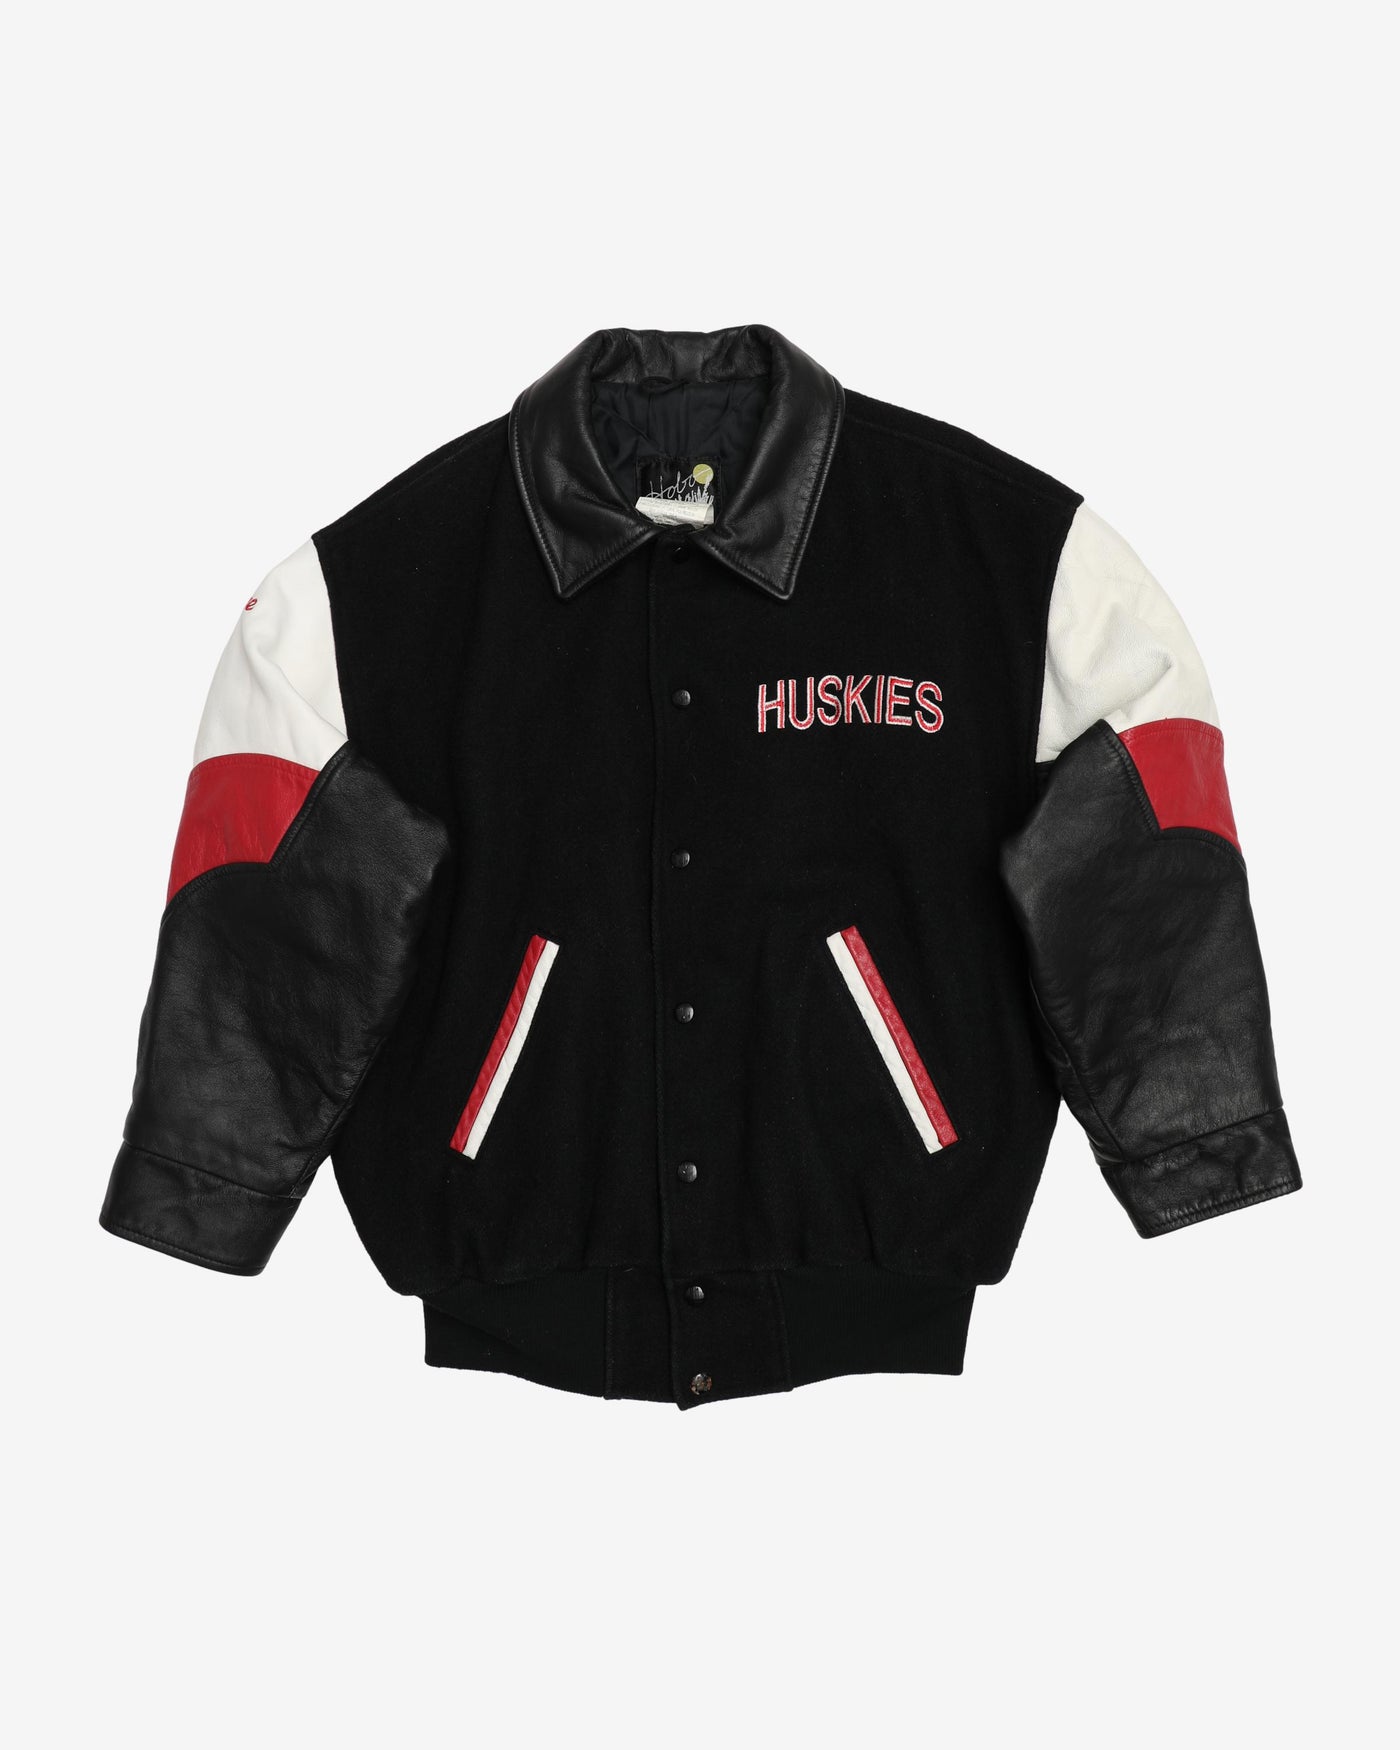 Vintage 1995 Huskies Baseball / Varsity Jacket - S